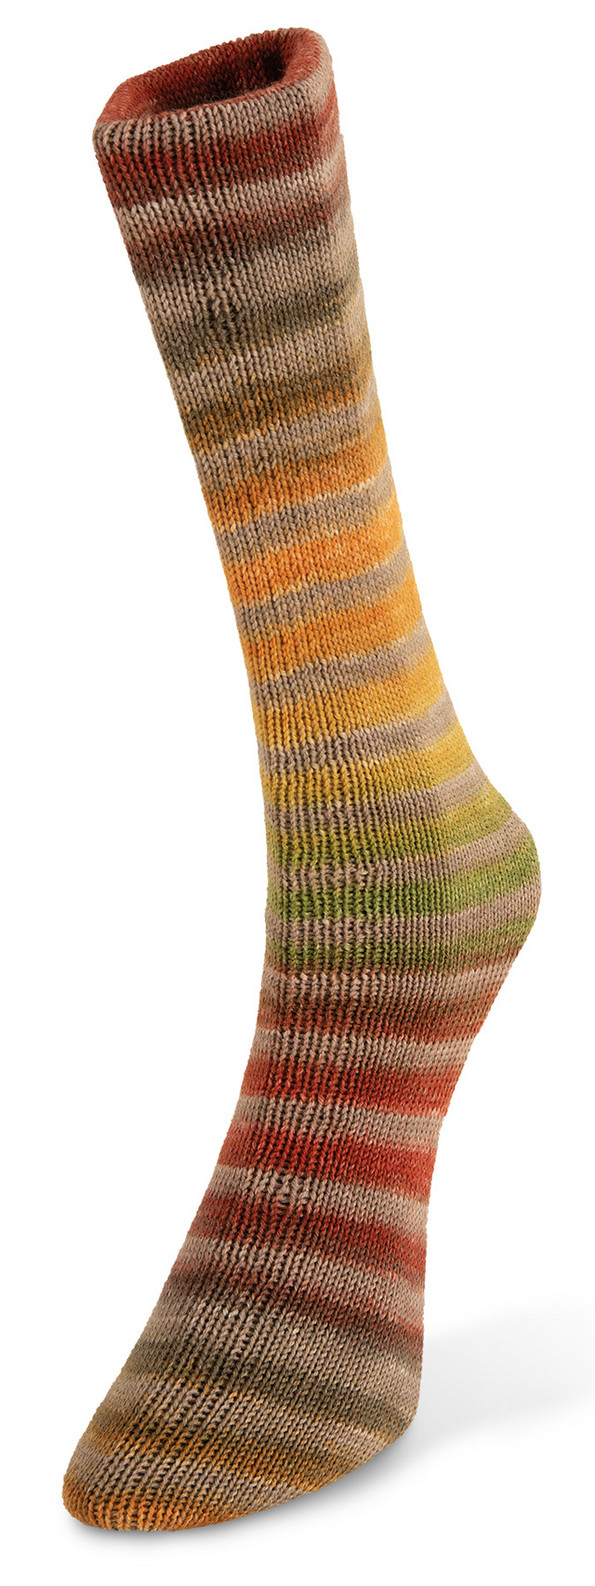 liukuvarjatty-sukkalanka-huivilanka-merinovilla-nylon-laines-du-nord-paint-sock-lanka